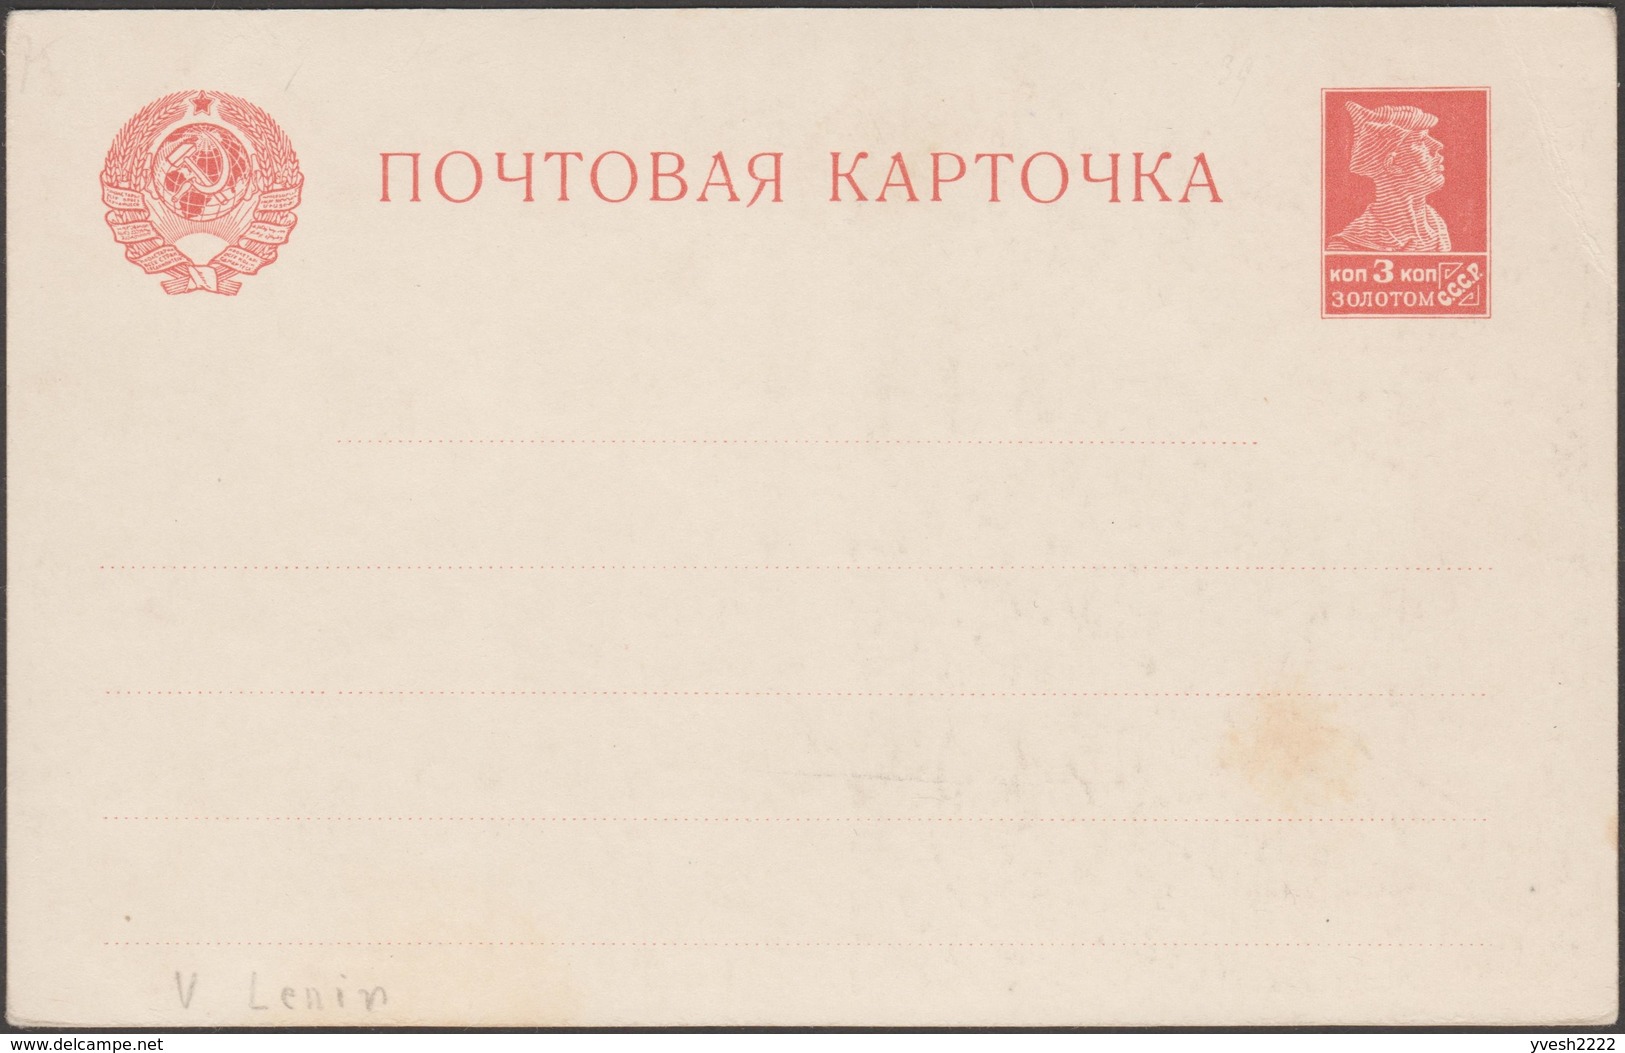 URSS 1924. 2 Cartes Postales, Entiers. Timbre 3 à Kop. Soldat. Décès De Vladimir Ilitch Oulianov, Dit Lénine. 2 Couleurs - Lenin